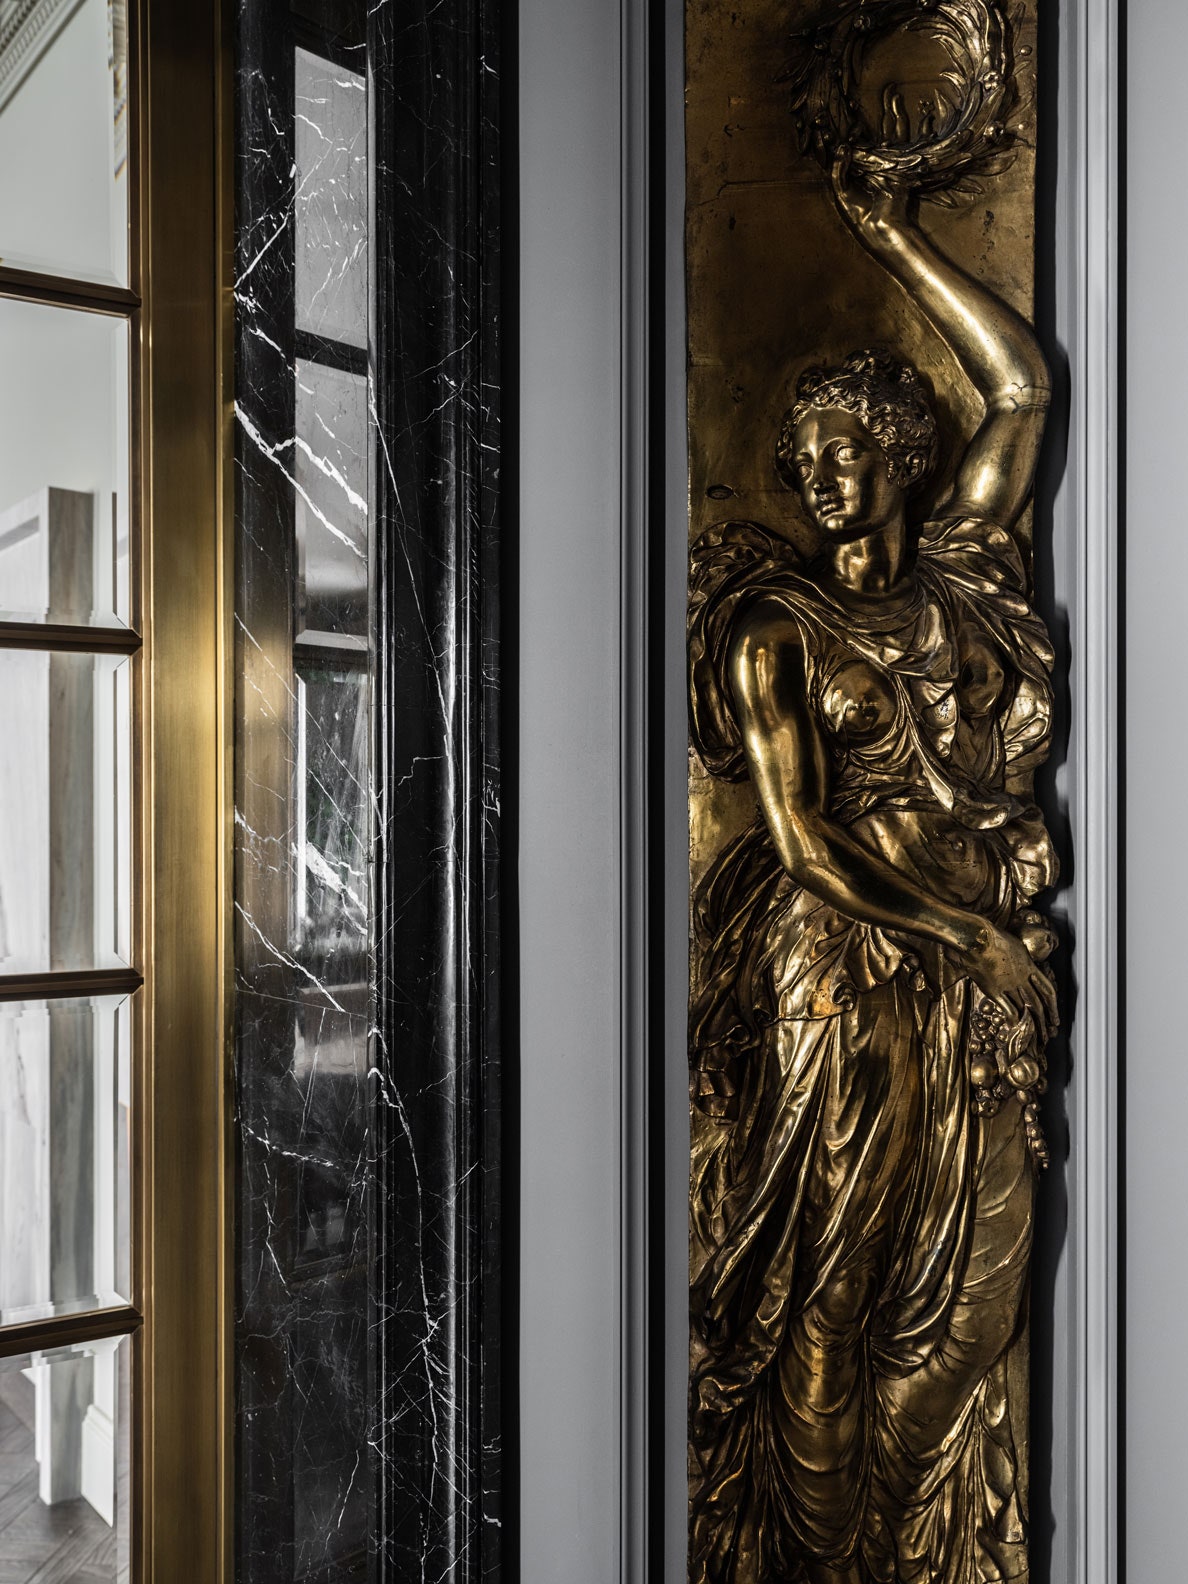 Квартира в тонах “голландской земли”. Фрагмент холла. Антикварные бронзовые барельефы из коллекции хозяев XIX век.